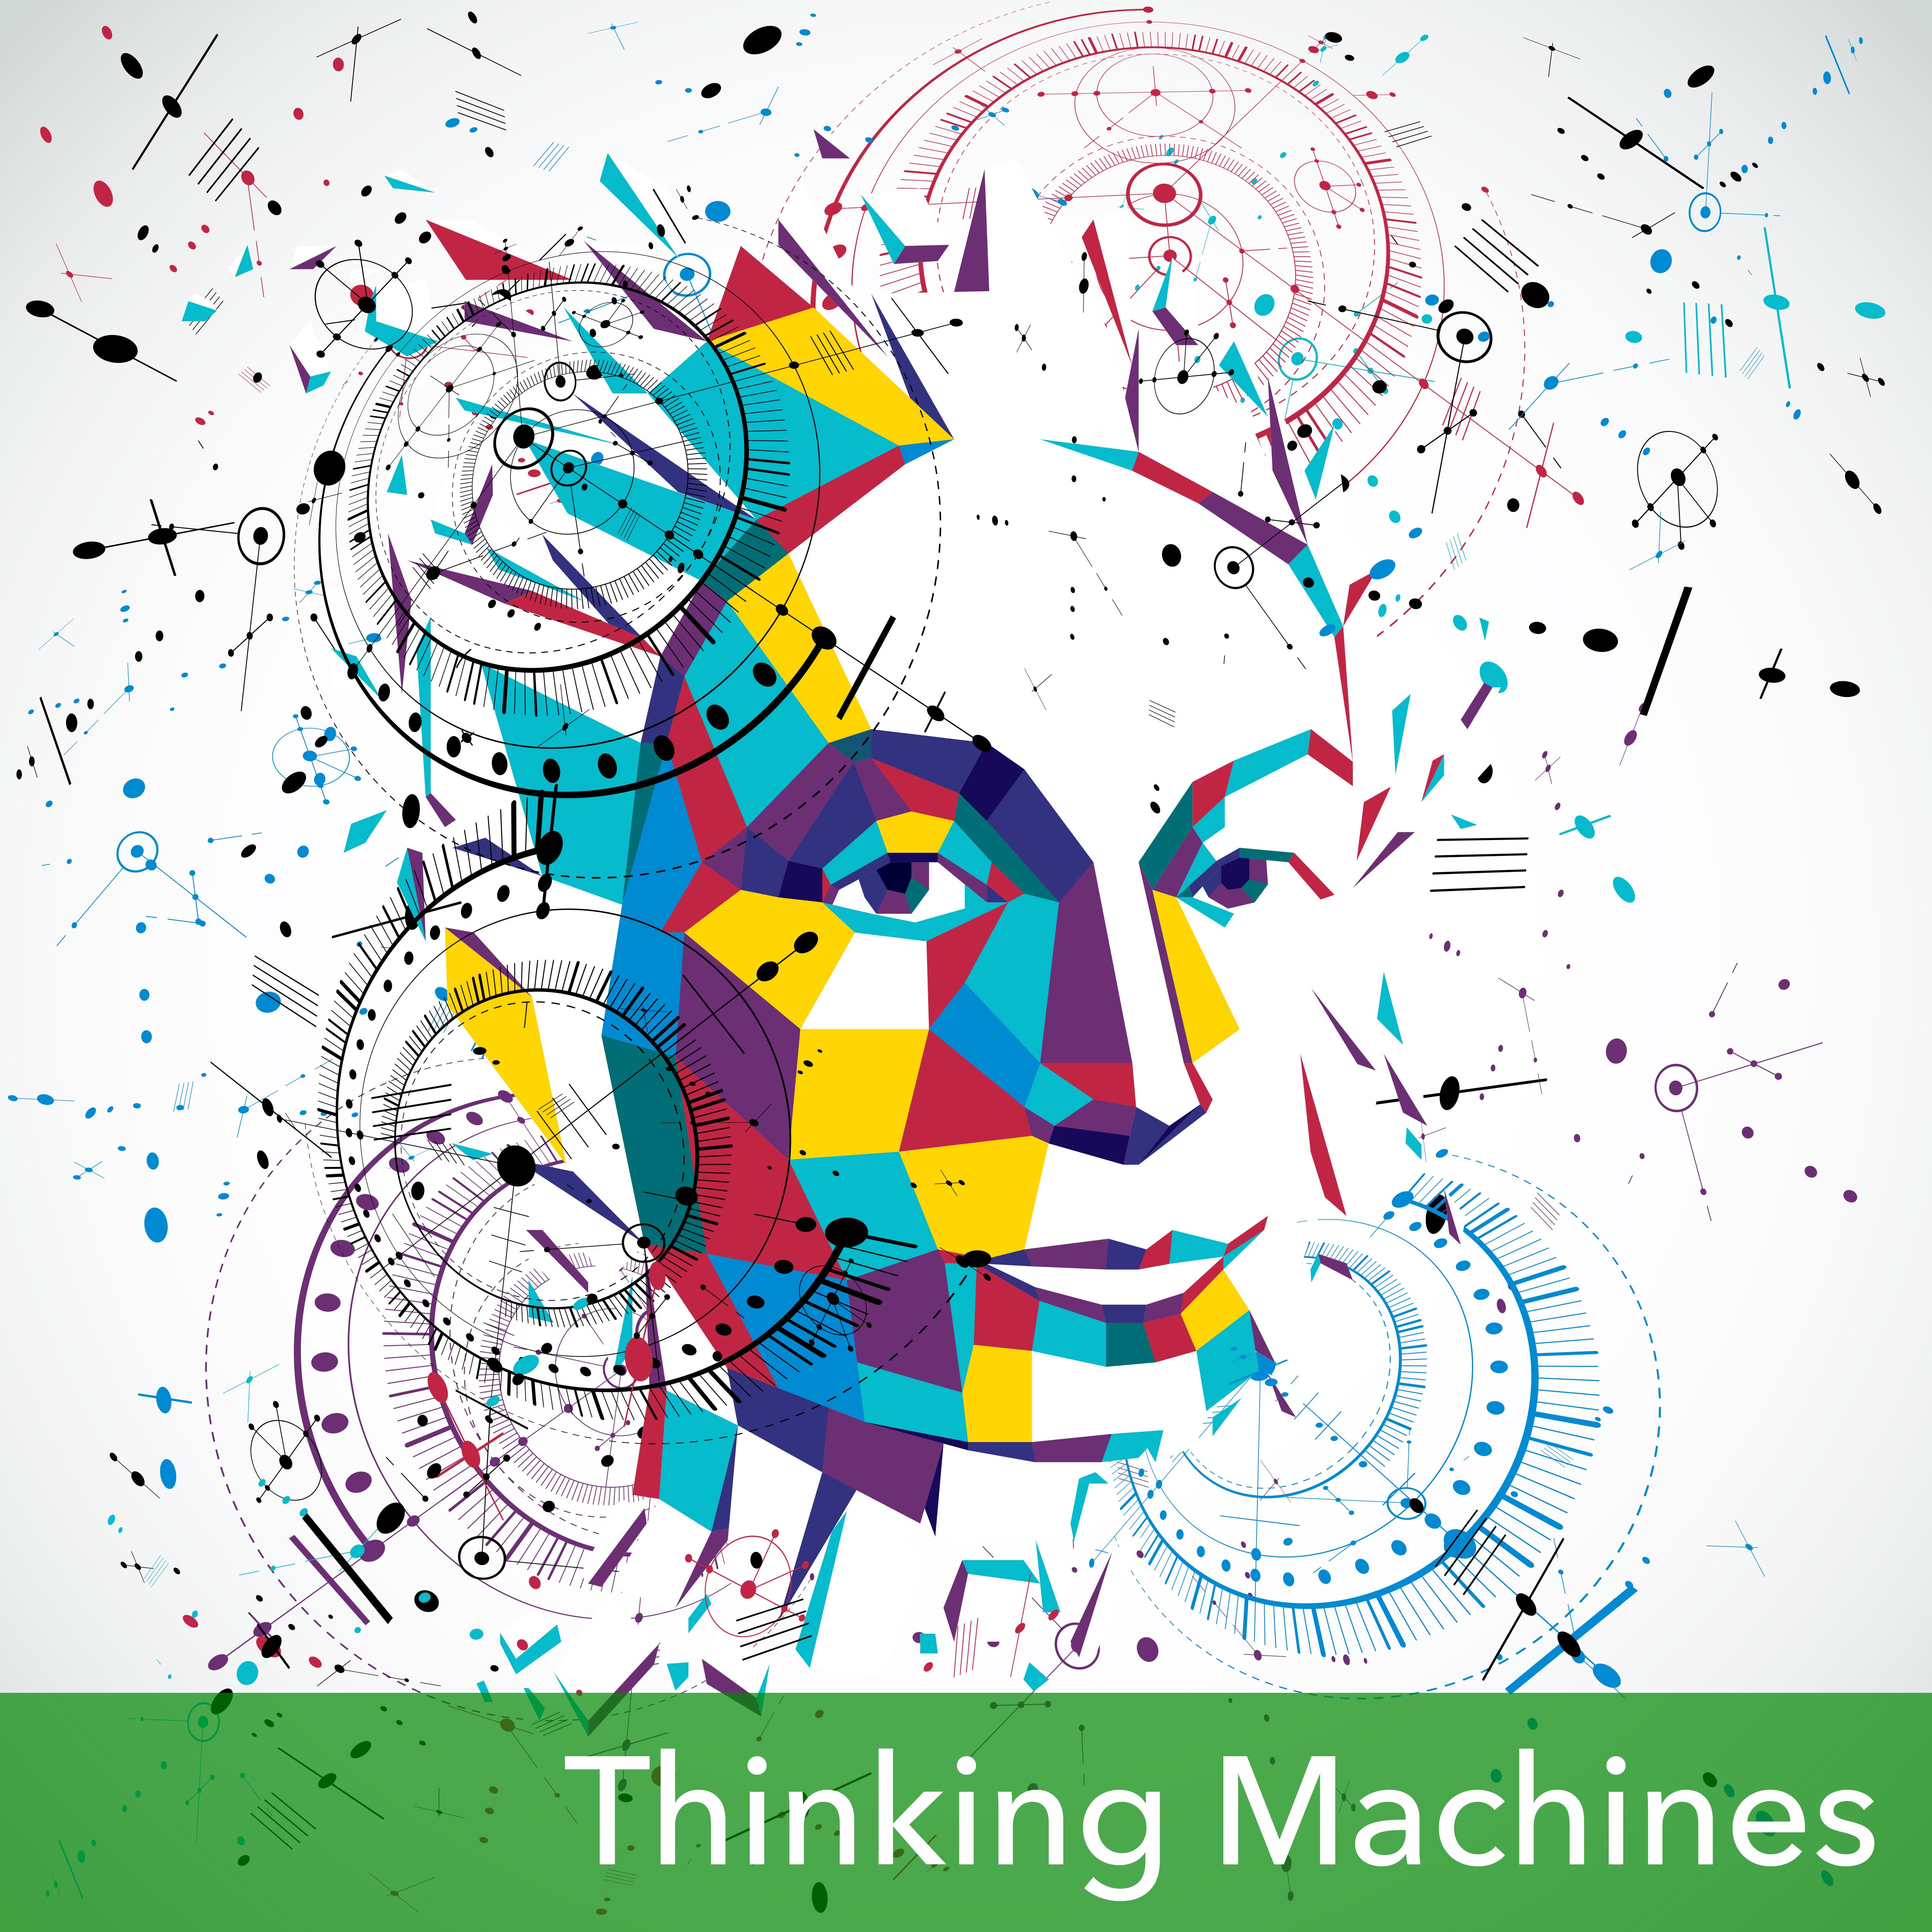 Ada as a thinking machine